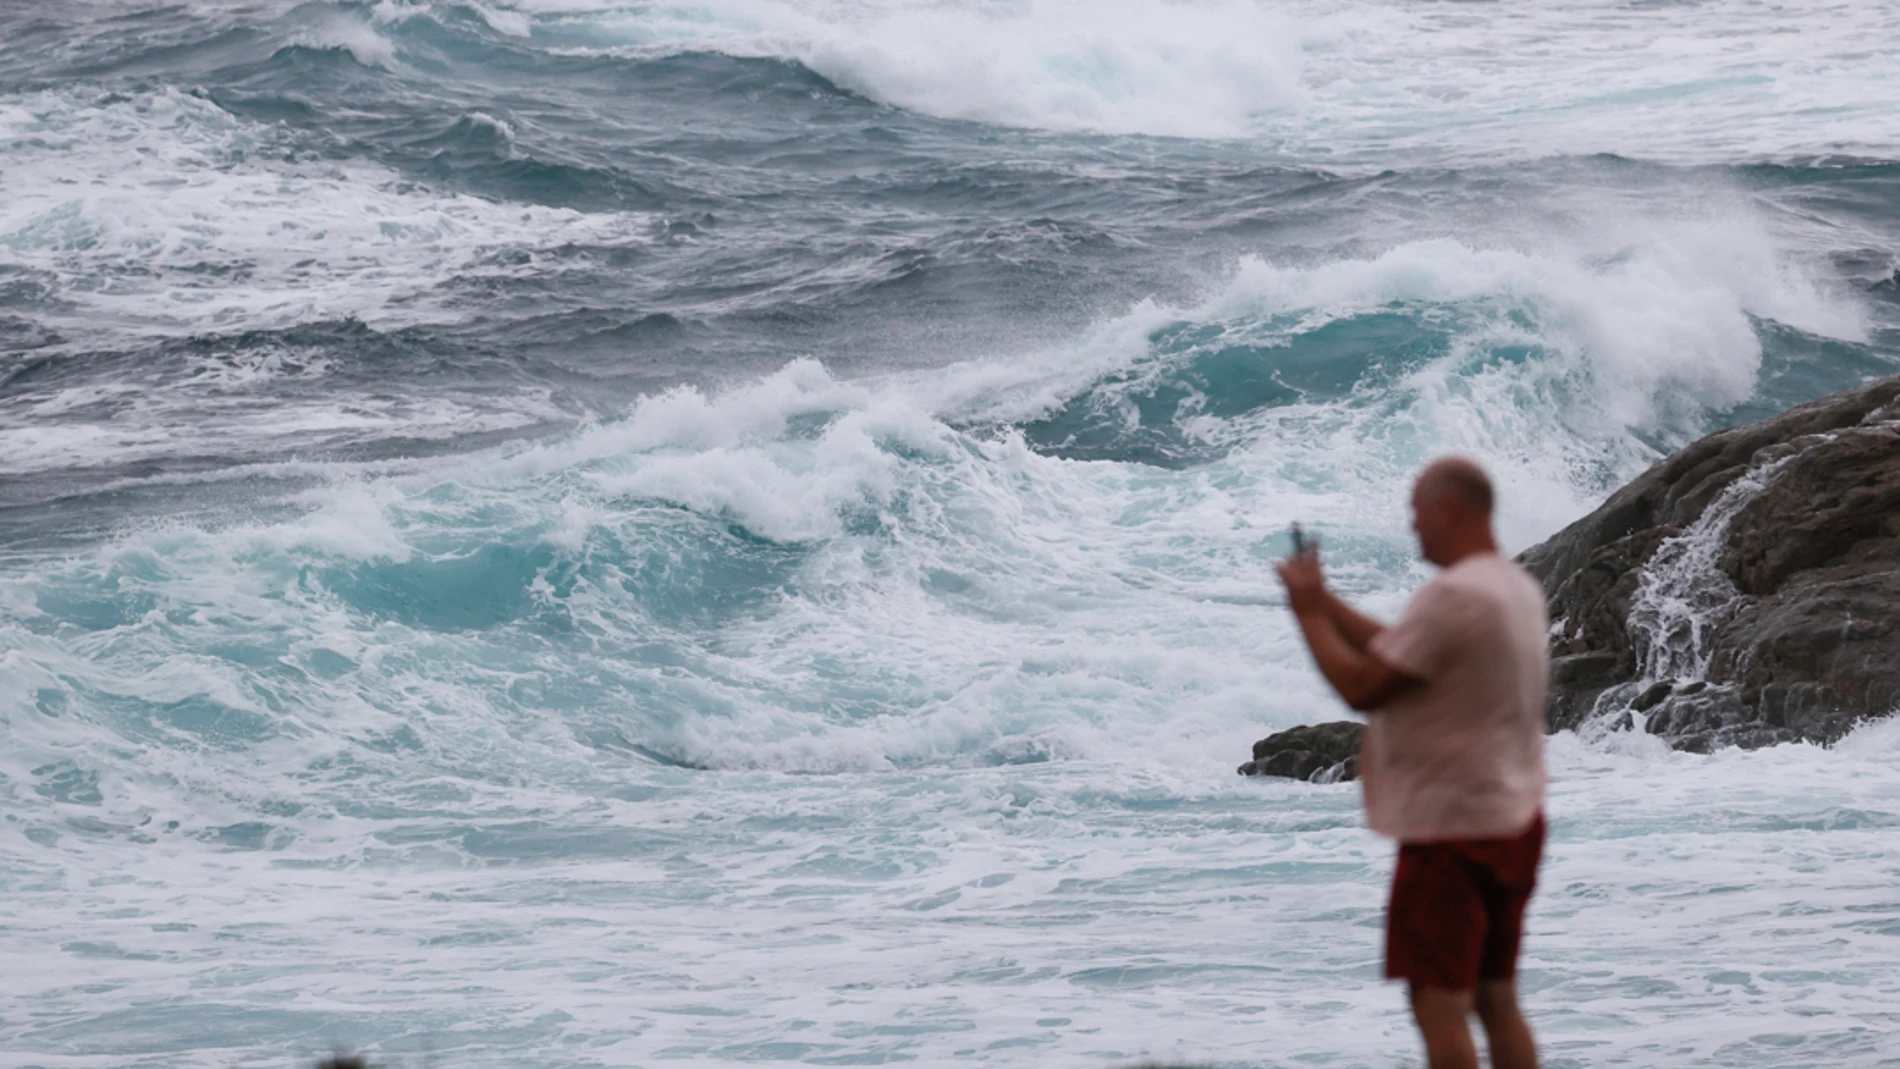 Un hombre hace una fotografía al oleaje durante un temporal